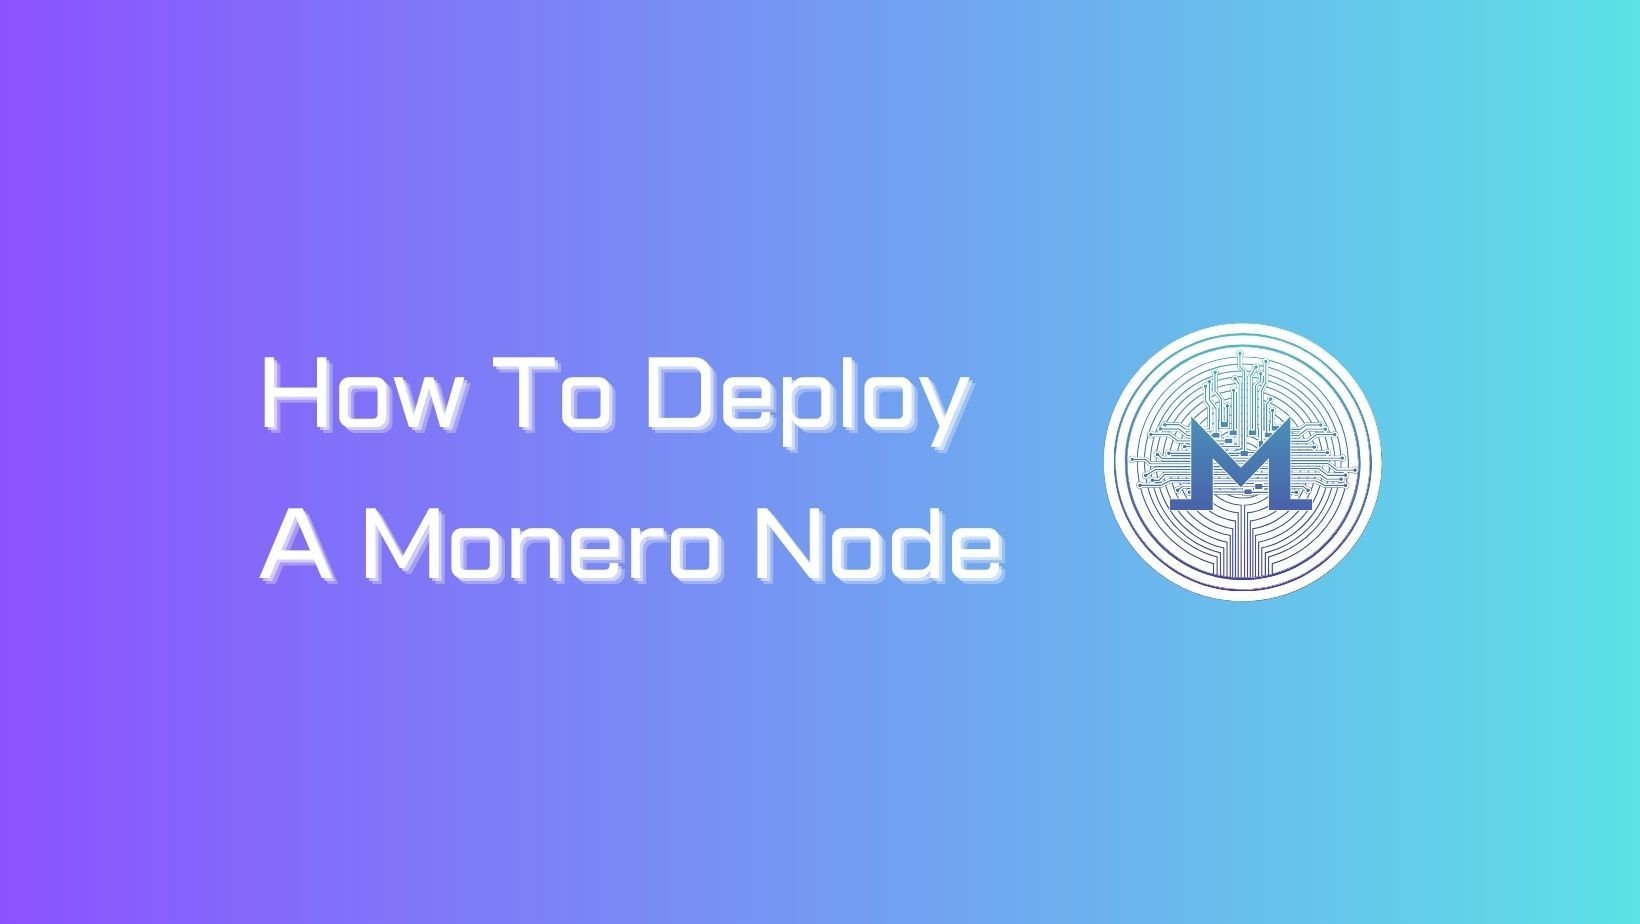 How to Deploy a Monero Node